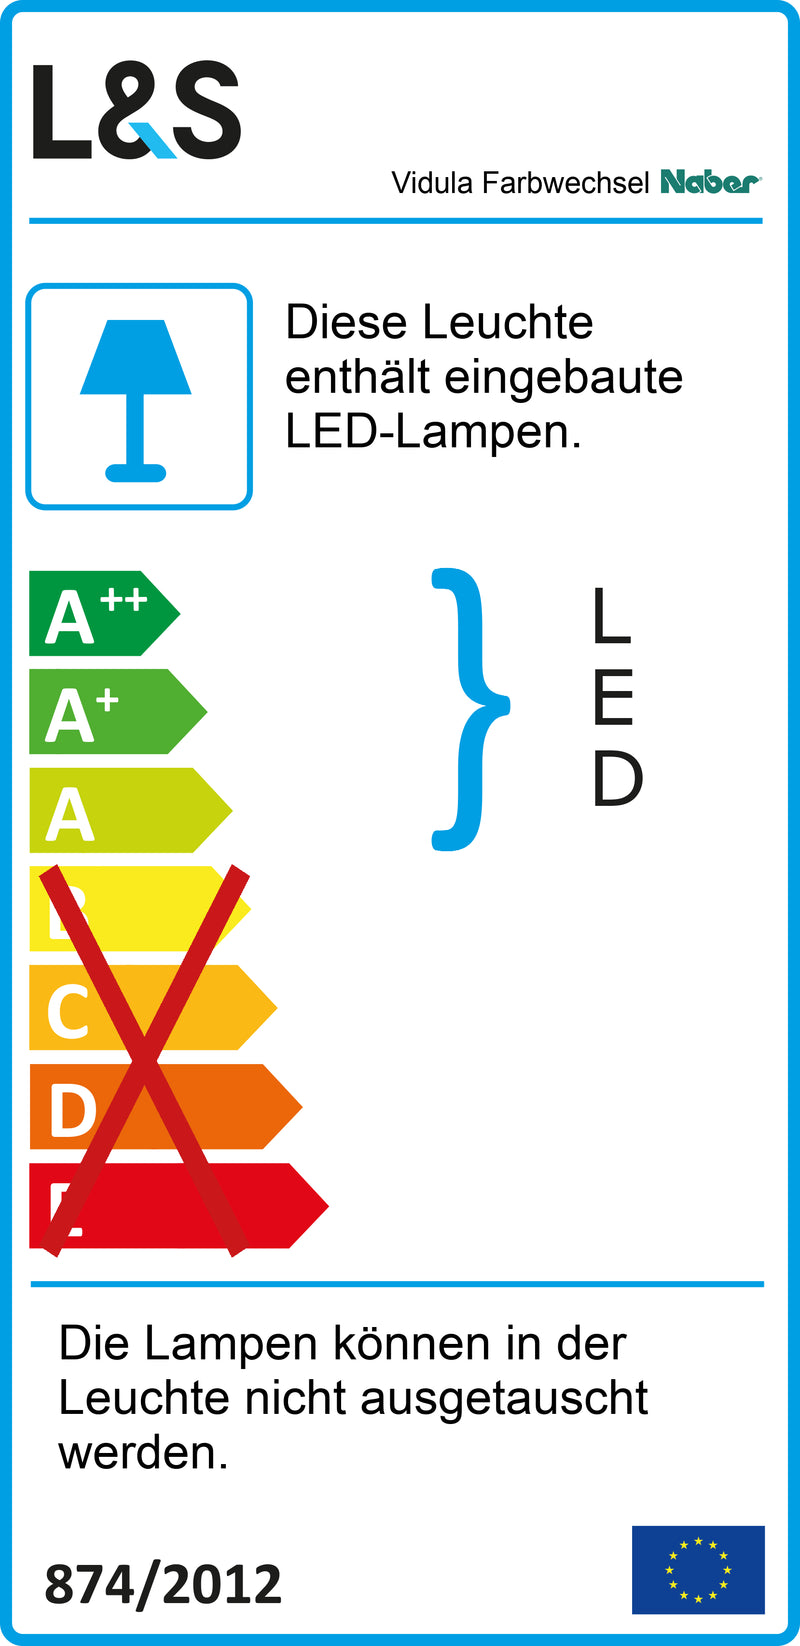 E-Label zu Zeichnung zu Vidula Farbwechsel LED als Variante L 1500 mm, schwarz matt von Naber GmbH in der Kategorie Lichttechnik in Österreich auf conceptshop.at